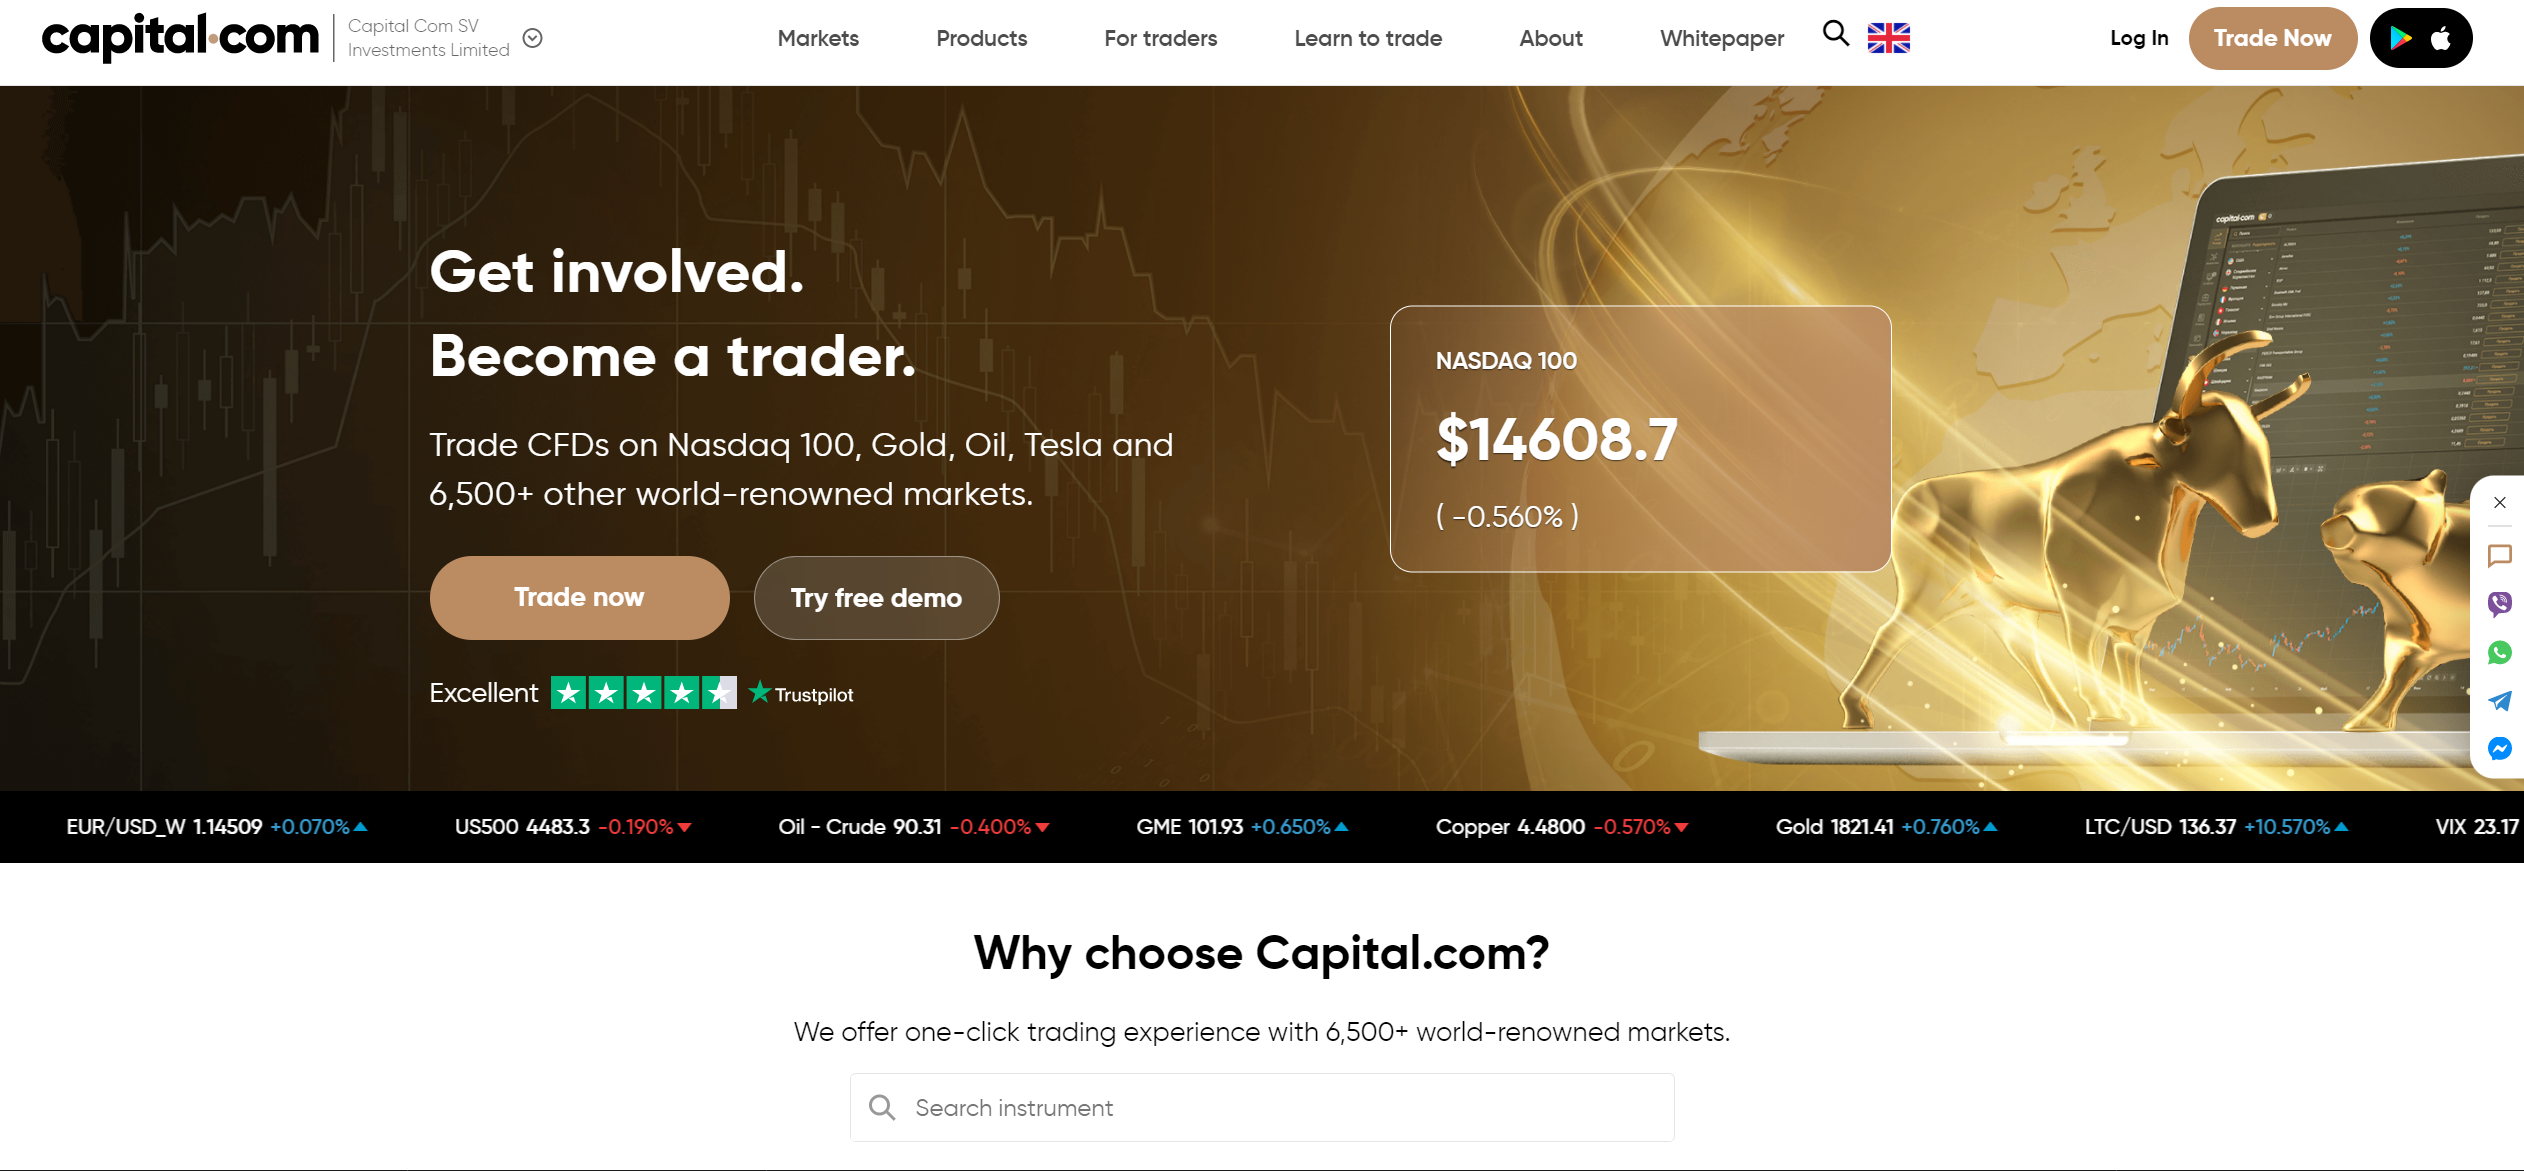 Capital.com official website